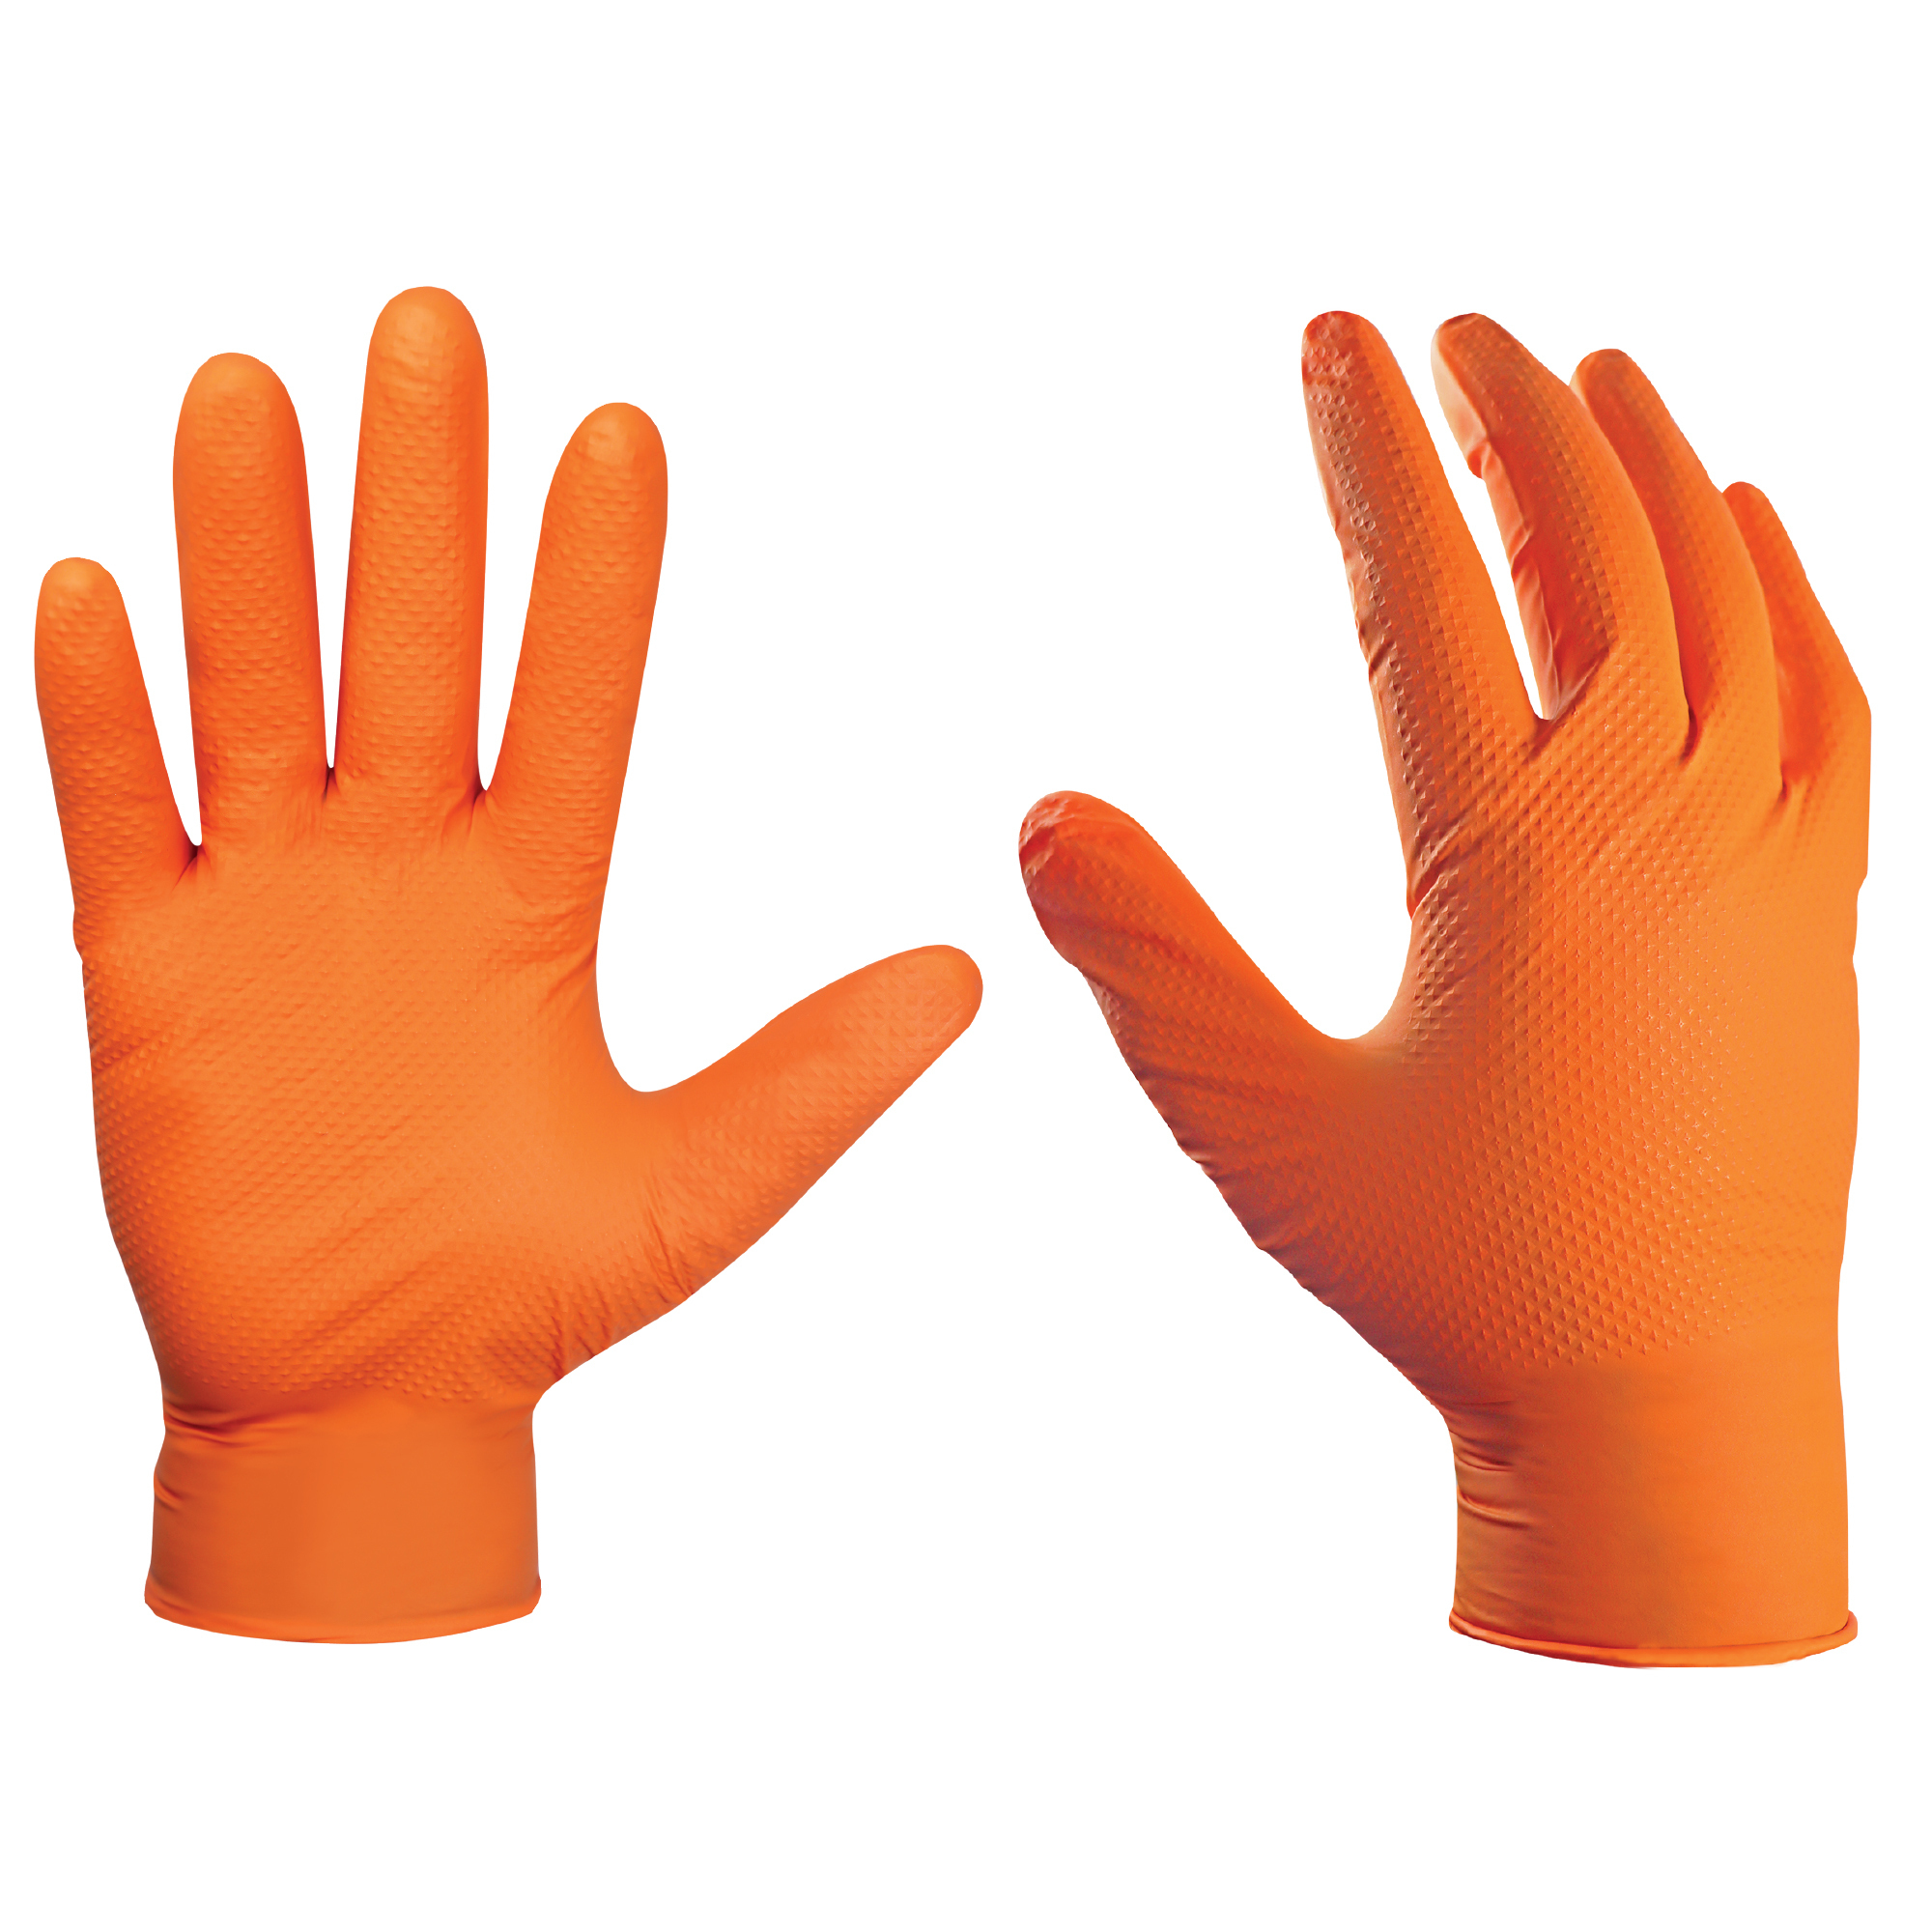 General Electric, 8mil Nitrile Orange Large Gloves 100pk, Size L, Color Orange, Included (qty.) 100 Model GG622L